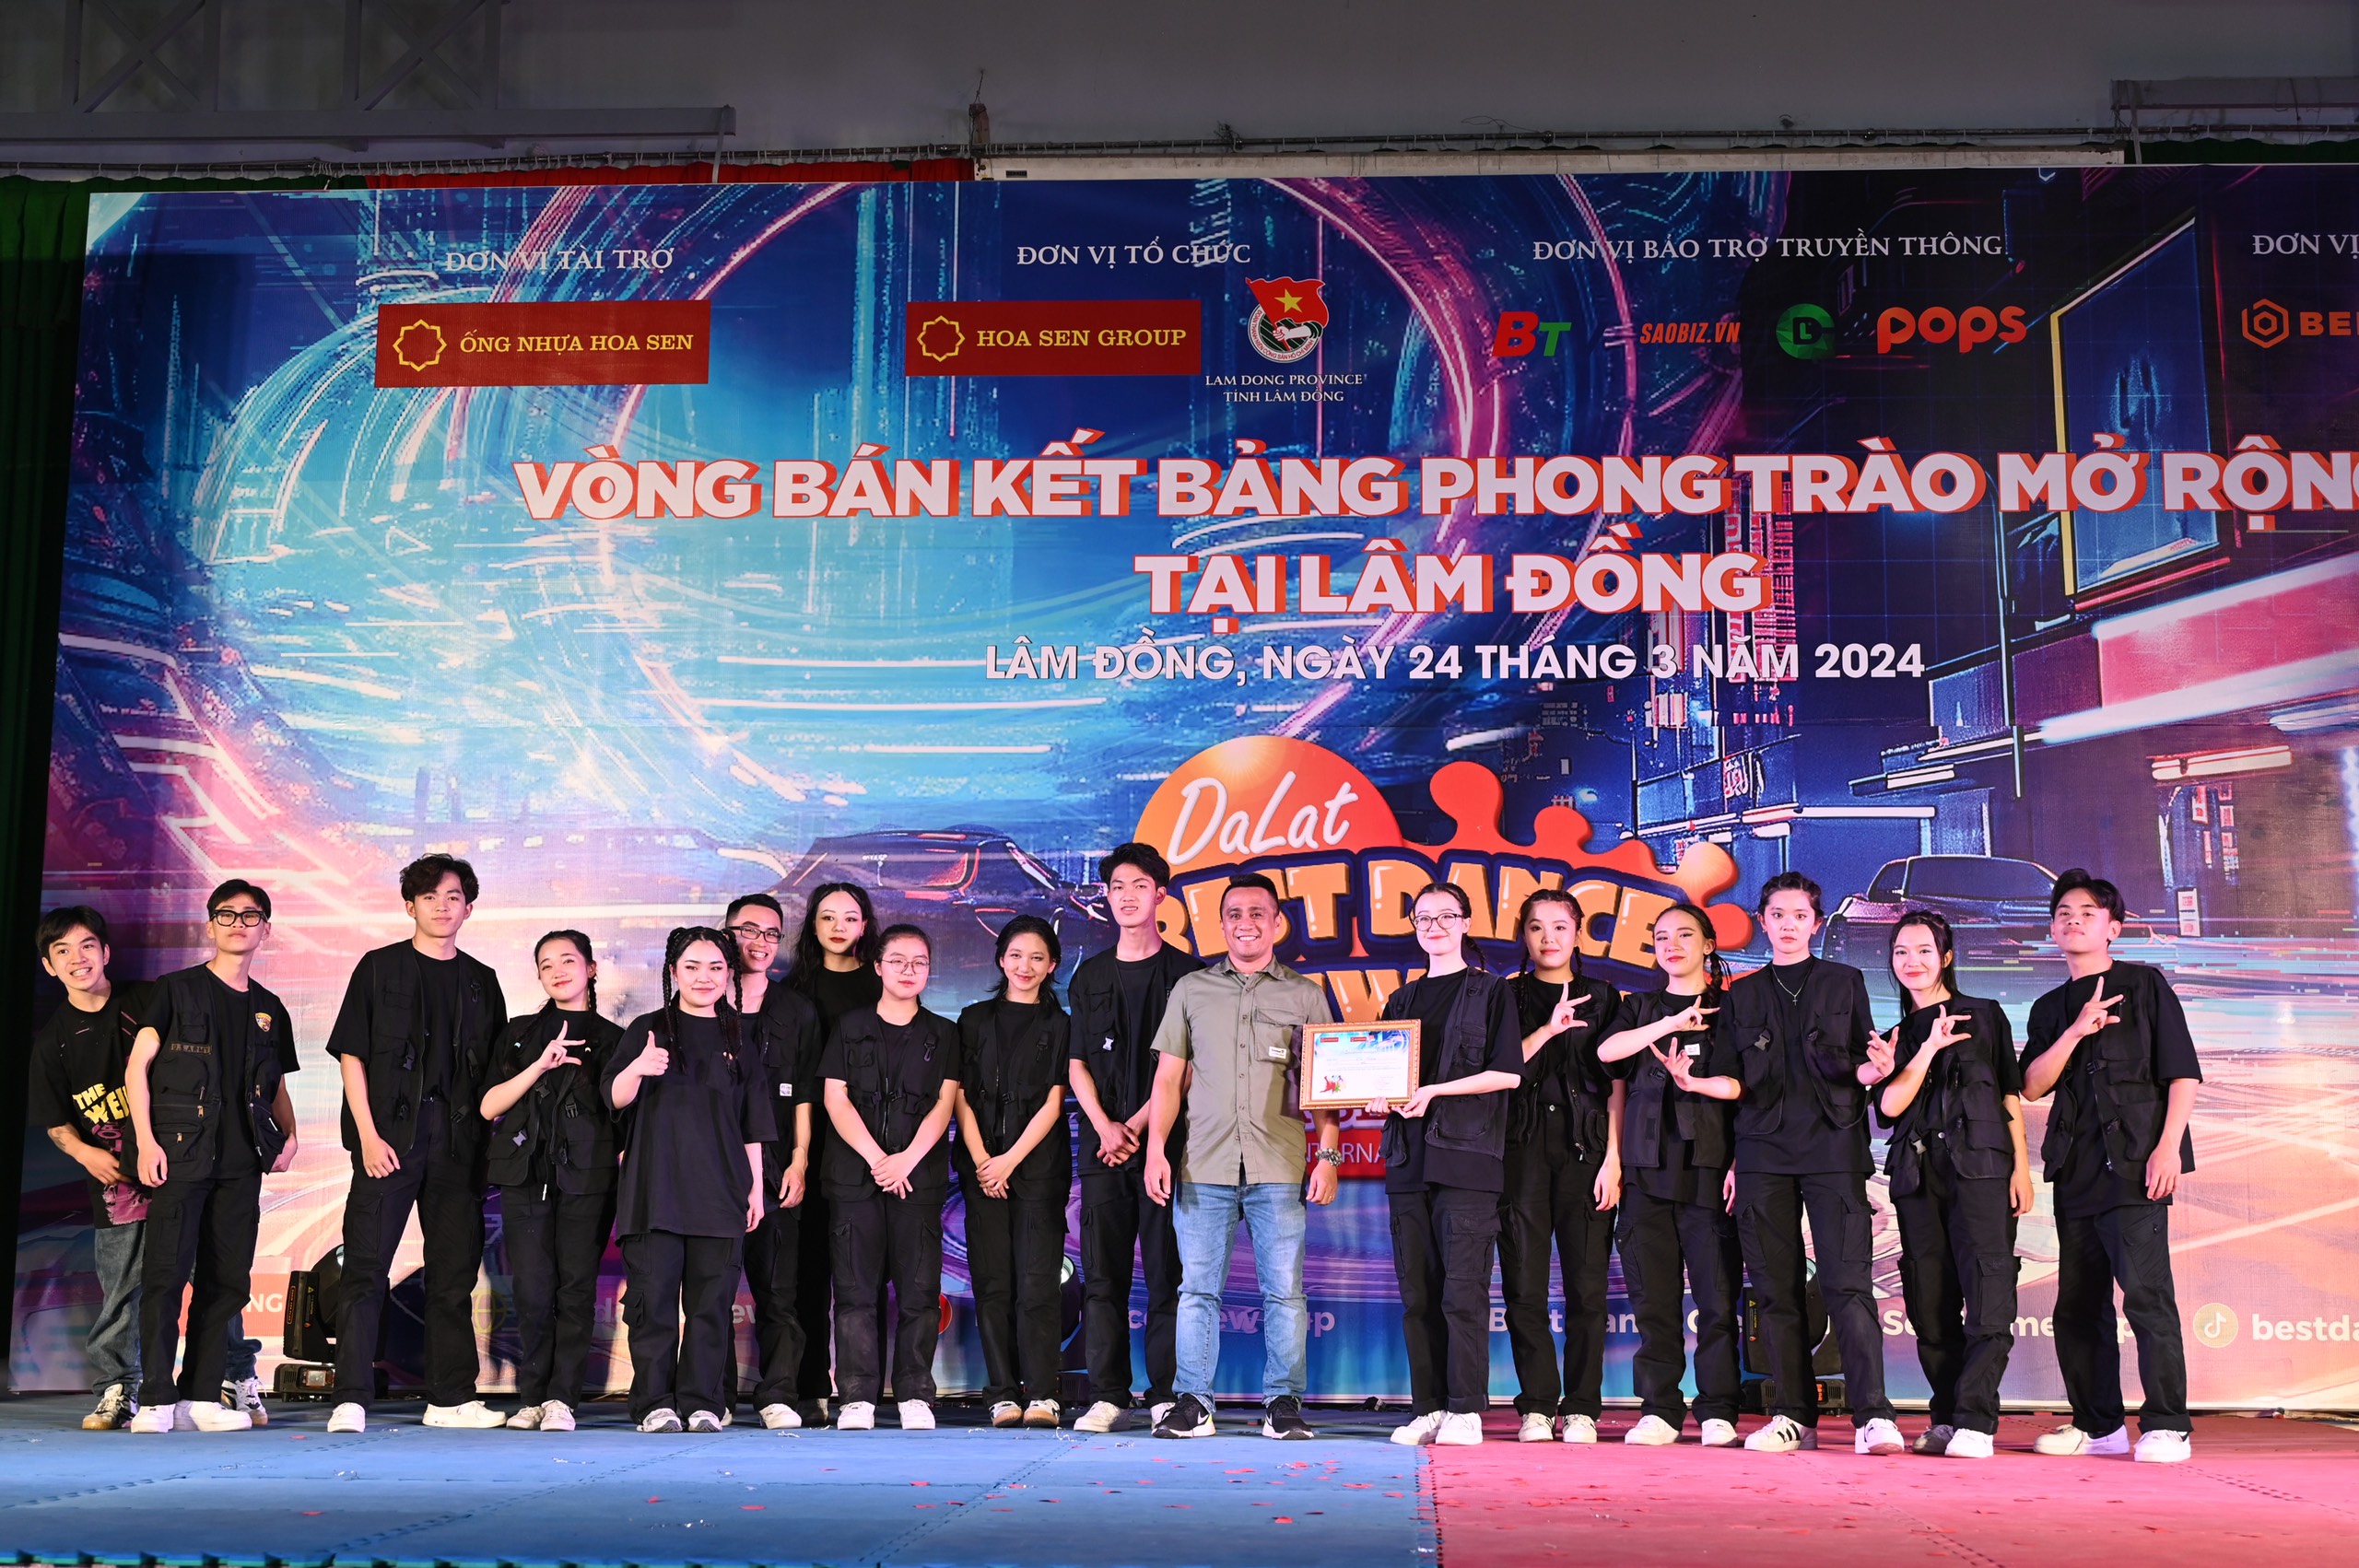 Lộ diện 14 nhóm nhảy phong trào tại Lâm Đồng lọt vào chung kết Dalat Best Dance Crew 2024 - Hoa Sen Home International Cup - 6